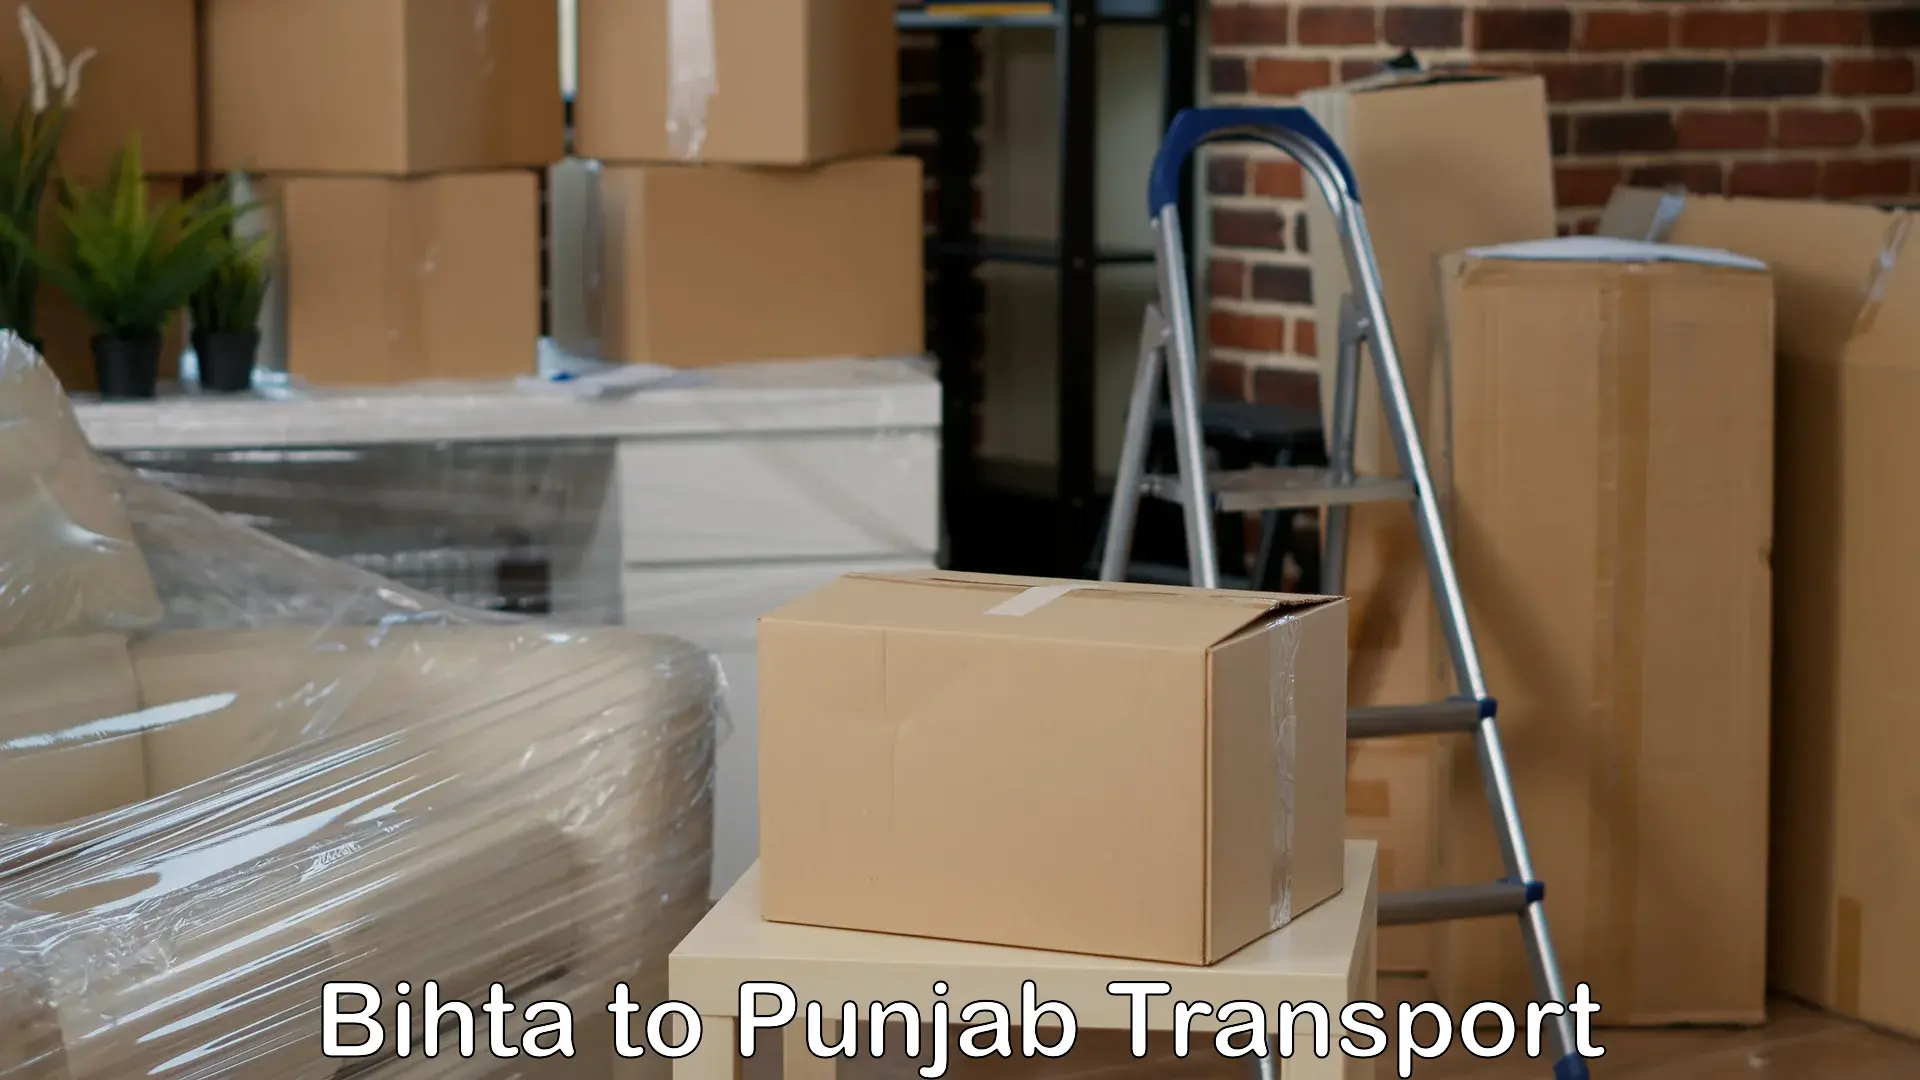 Commercial transport service Bihta to Jalandhar